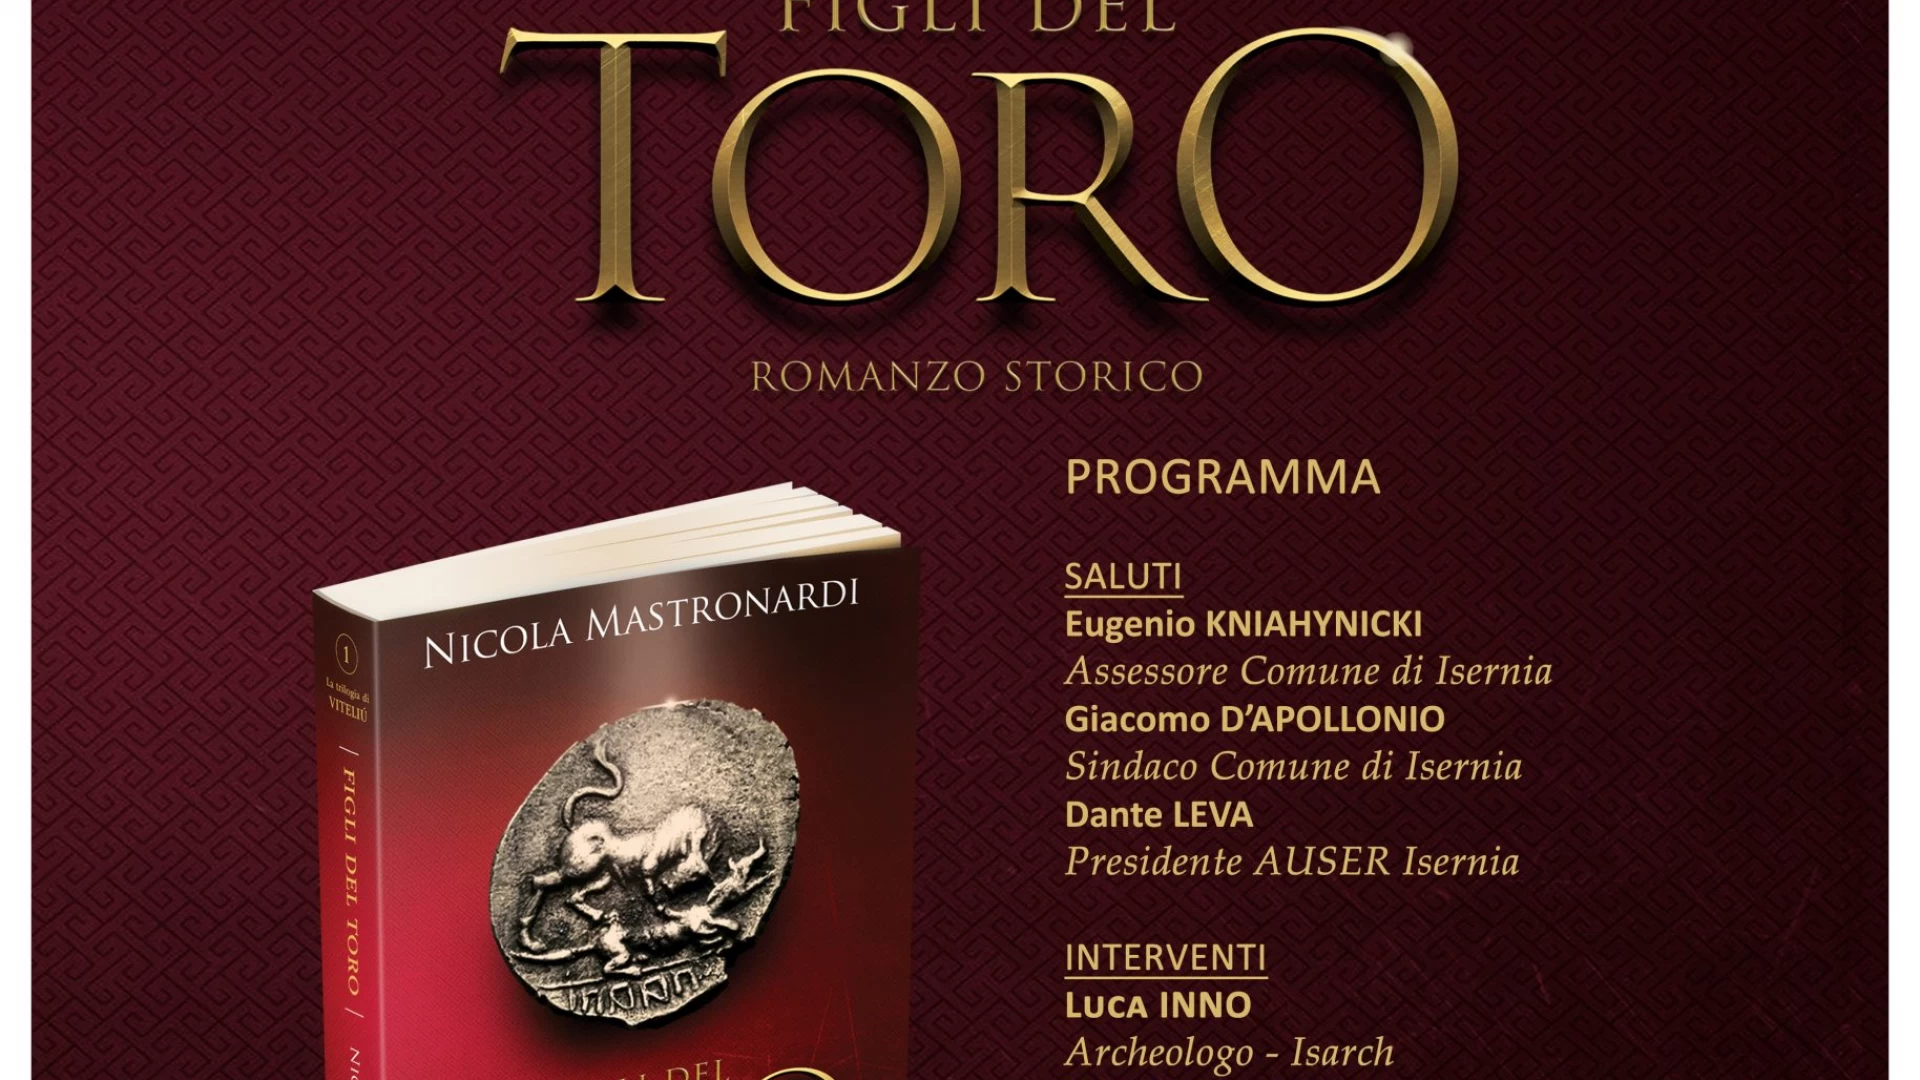 Ad Isernia una serata letteraria con la presentazione del romanzo di Nicola Mastronardi dal titolo “Figli del Toro”.